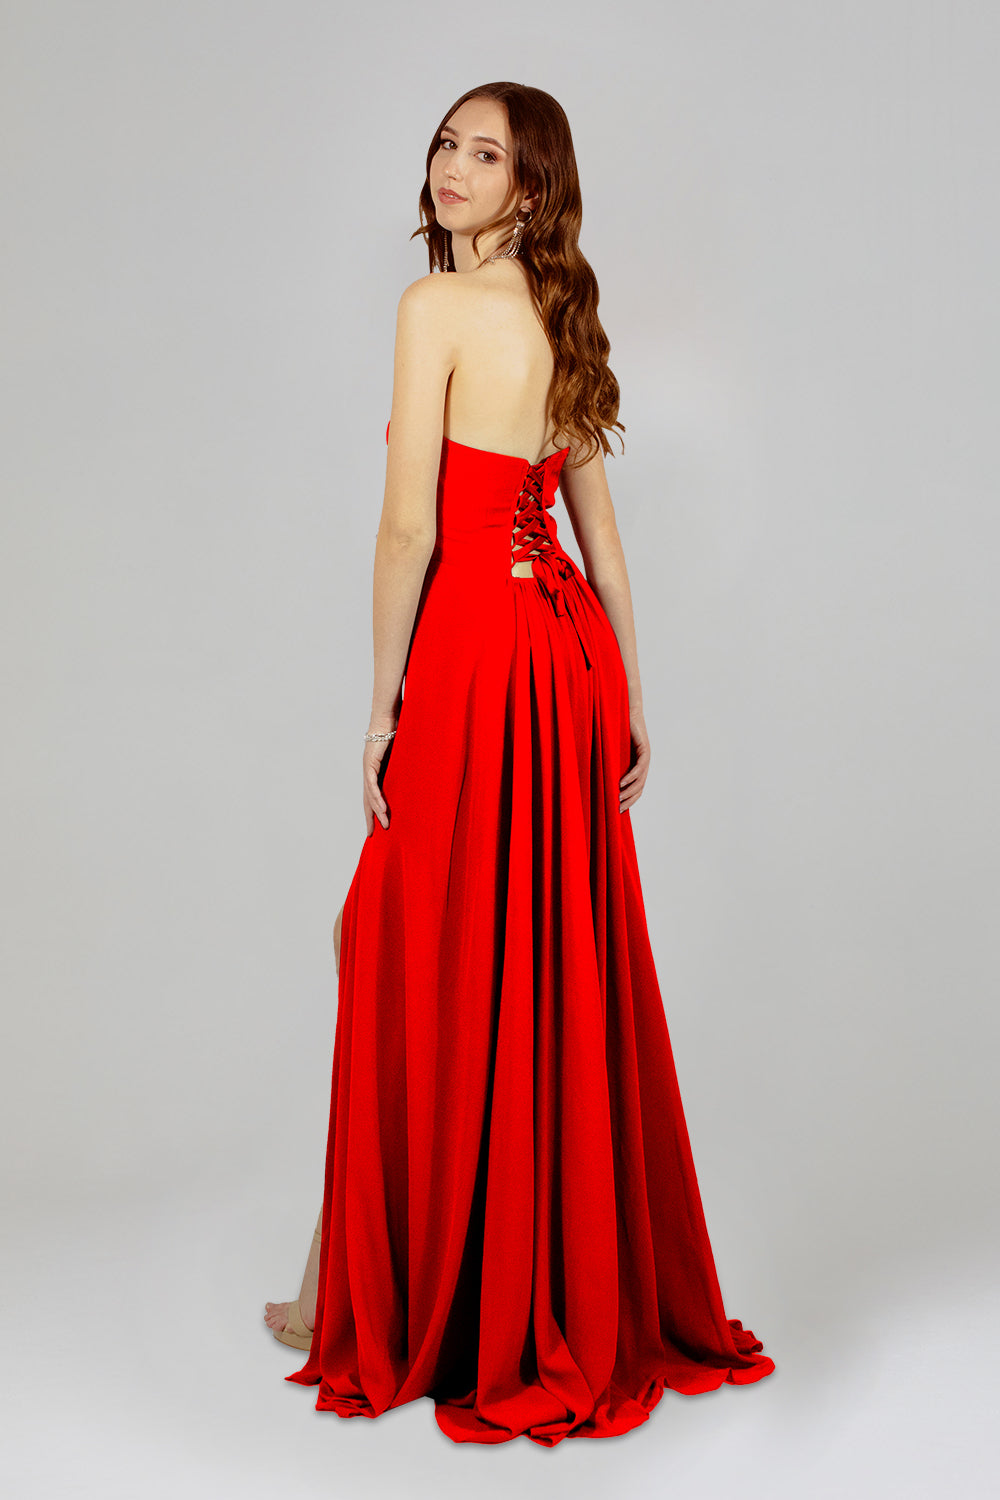 chiffon red bridesmaid dresses online australia envious bridal & formal